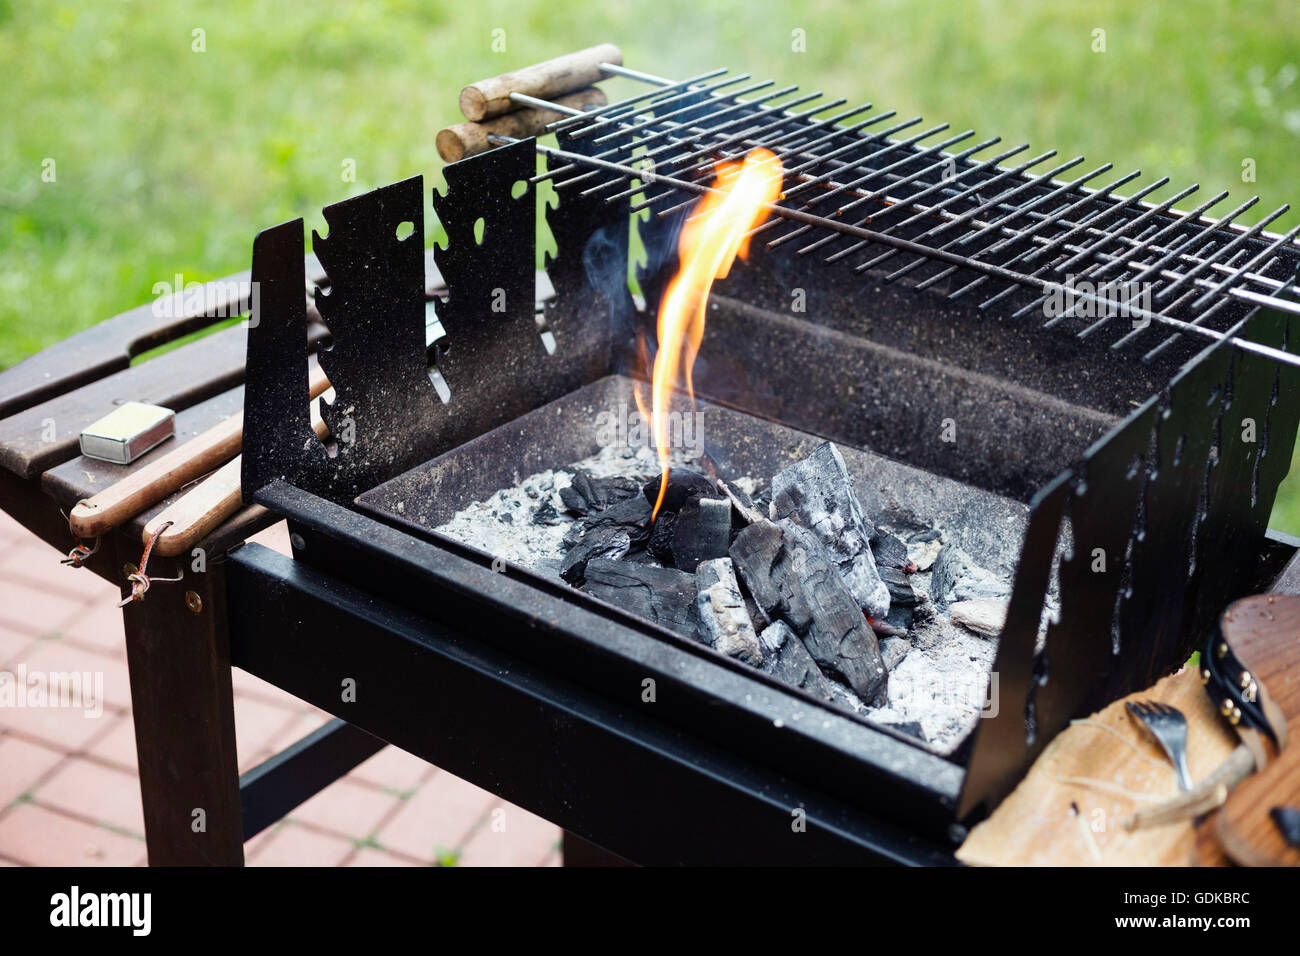 La preparazione di brace per un barbecue estivo partito. Immagine dello  stile di vita, luce naturale, profondità di campo Foto stock - Alamy